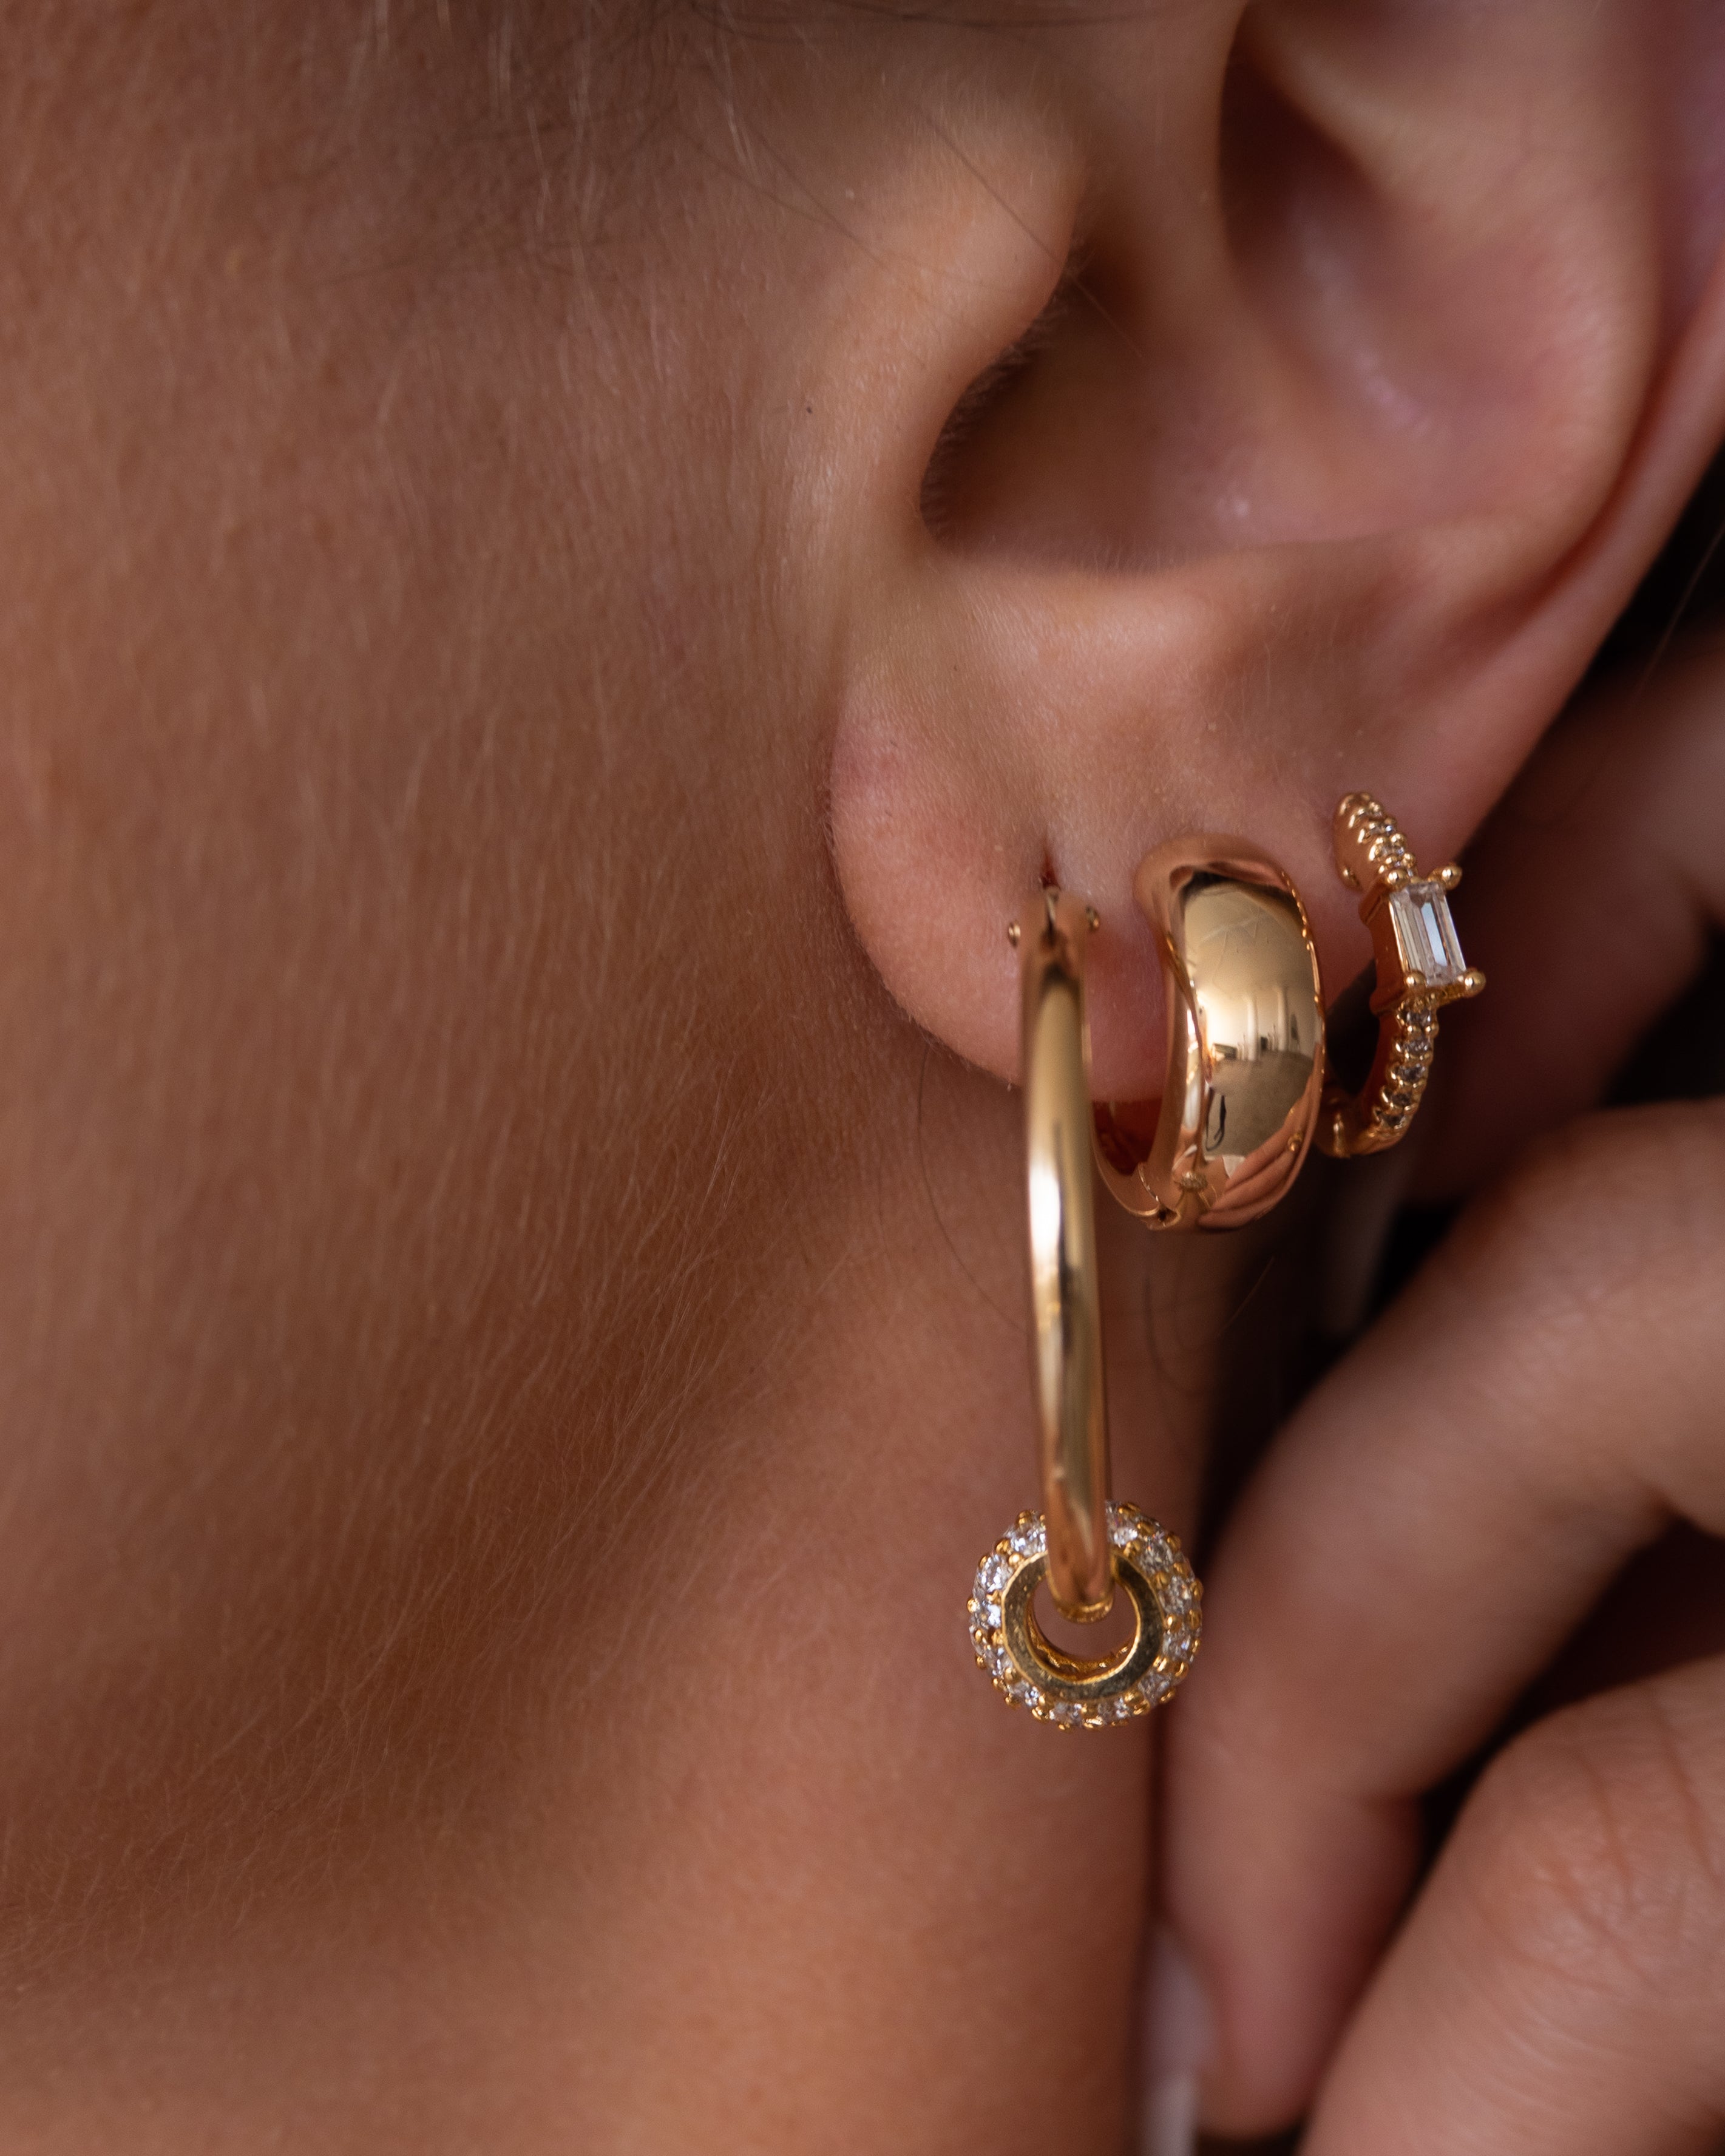 Mallory earrings